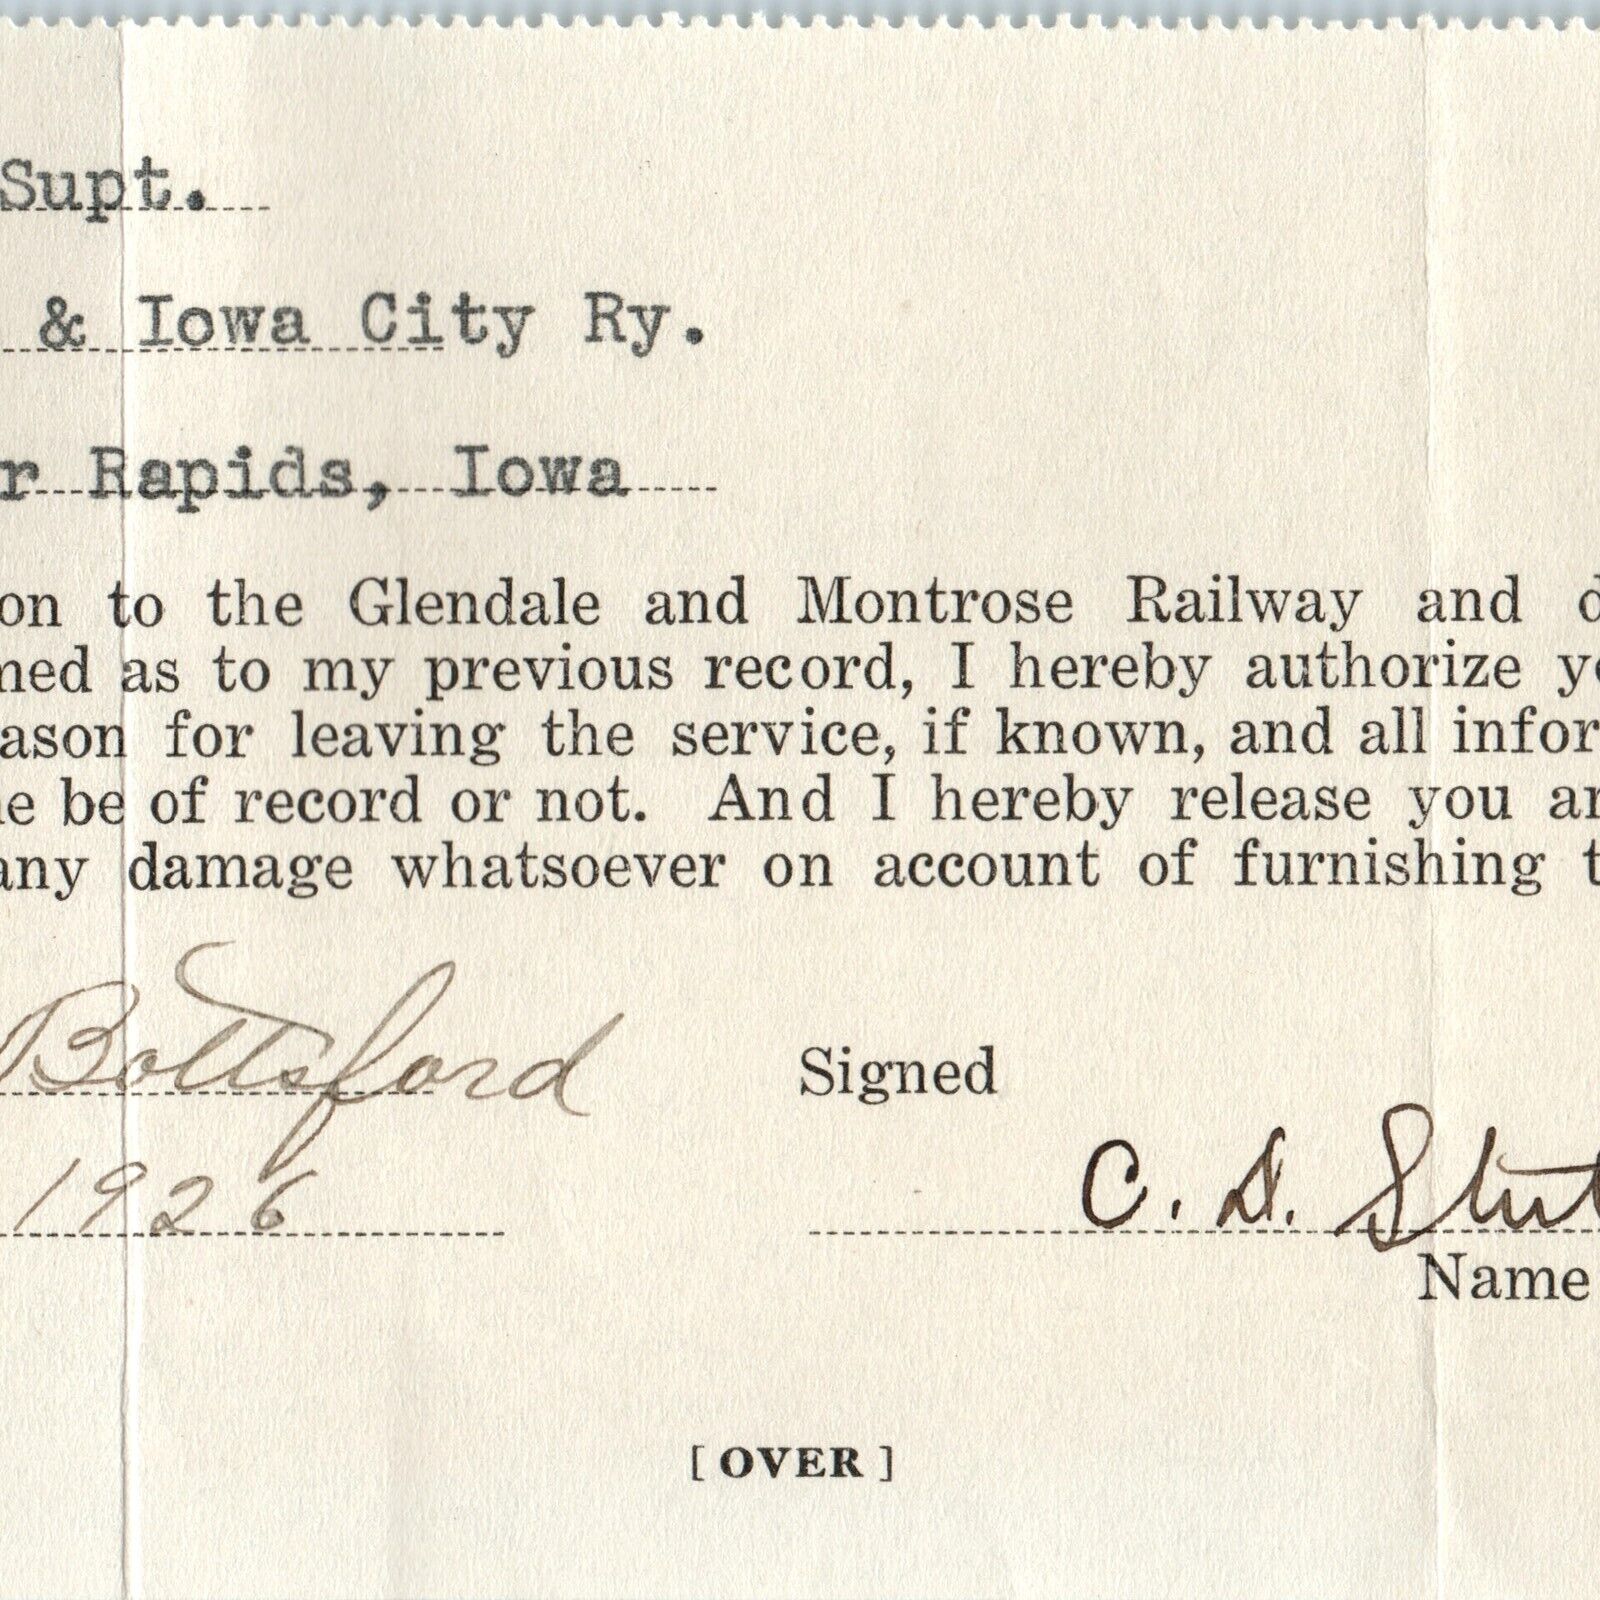 11926 Cedar Rapids IA EF Winslow Glendale Montrose Railway Paper Iowa City Ry 3G